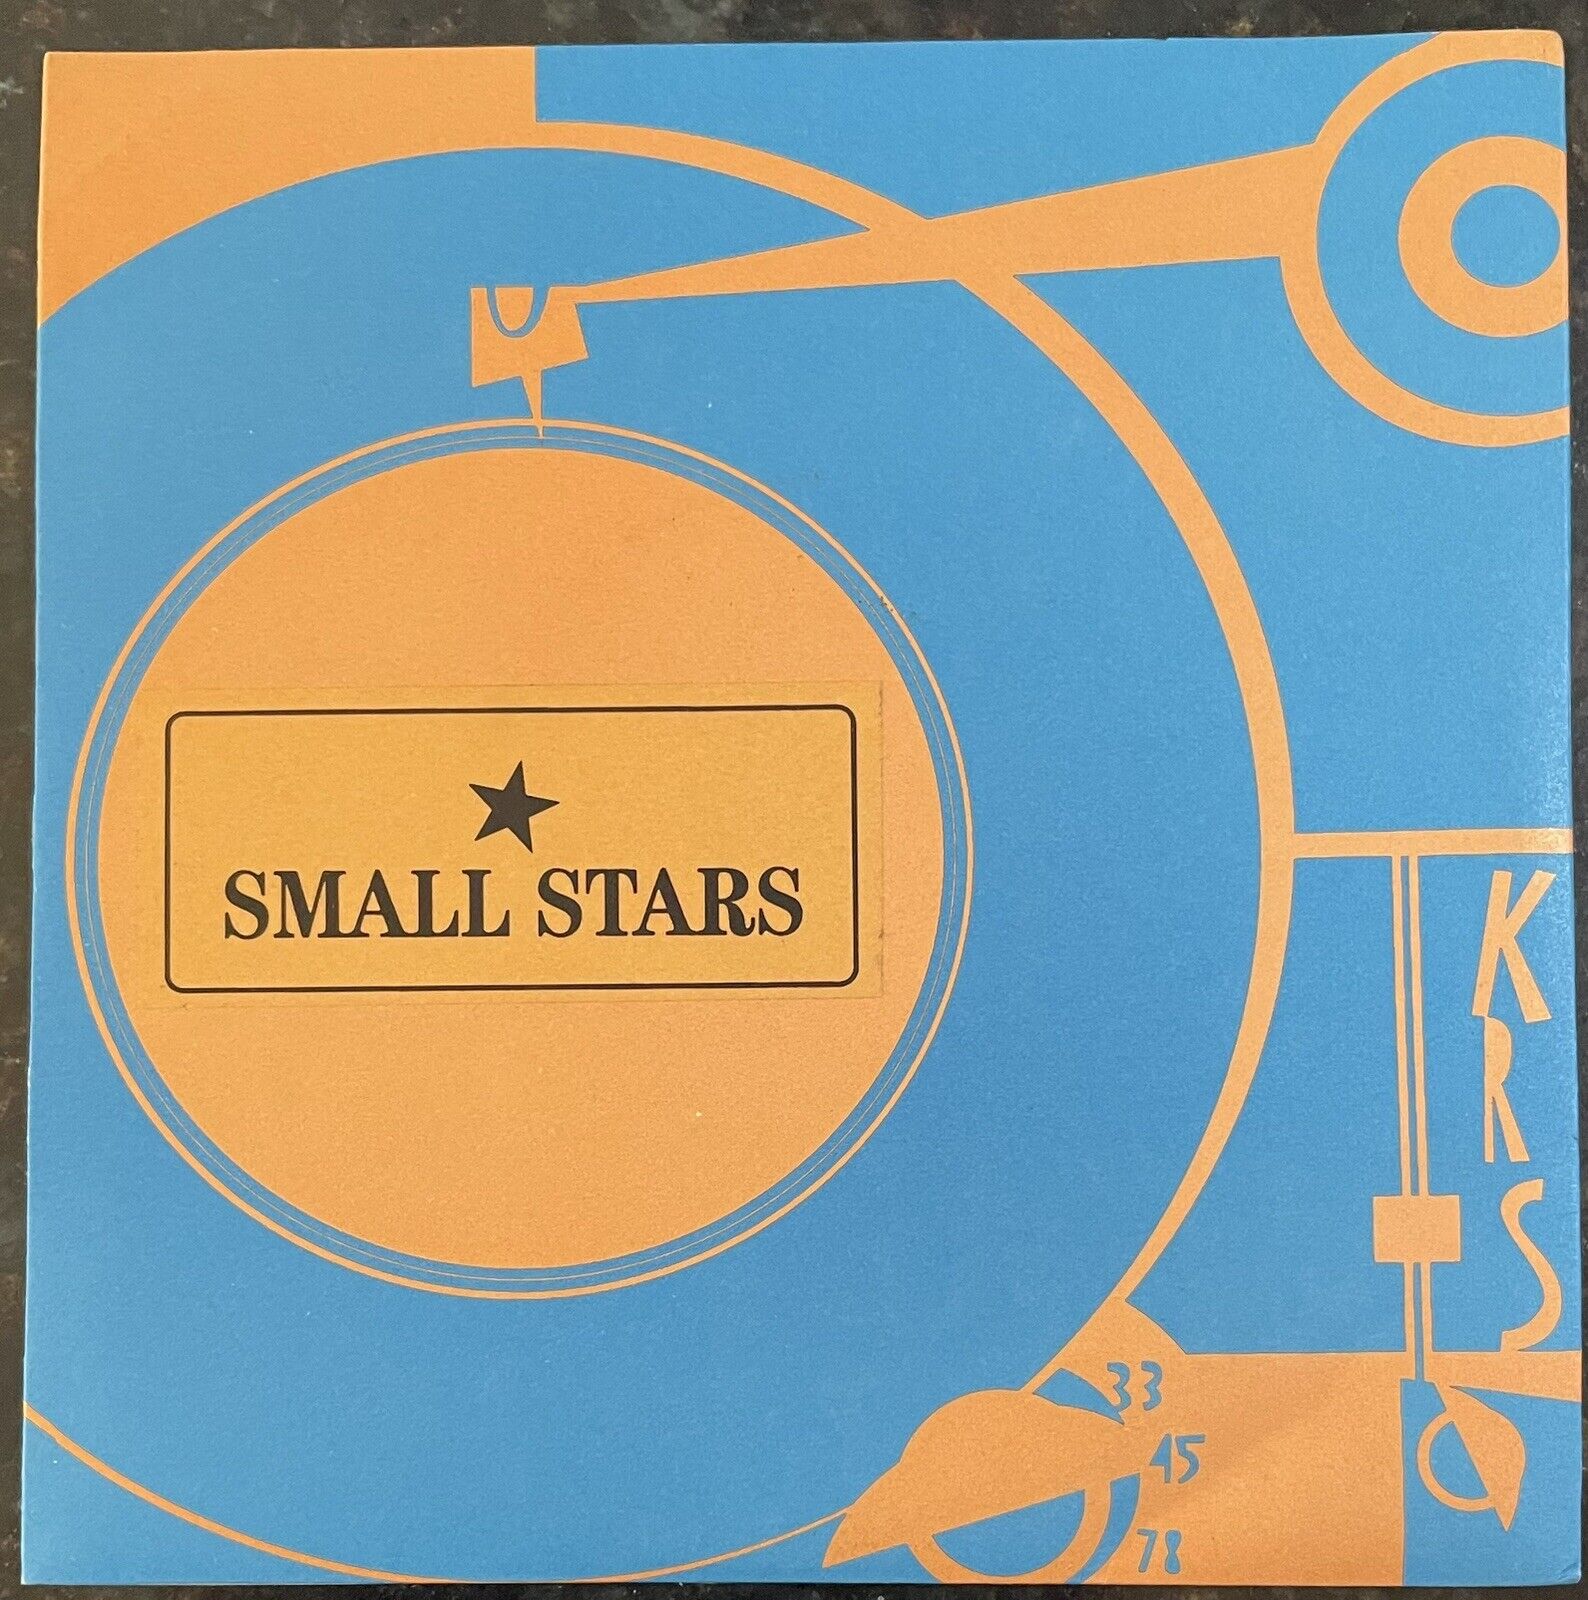 SMALL STARS Mailorder Freak 7" M/NM- 764-Hero Modest Mouse Kill Sybil Fratellis